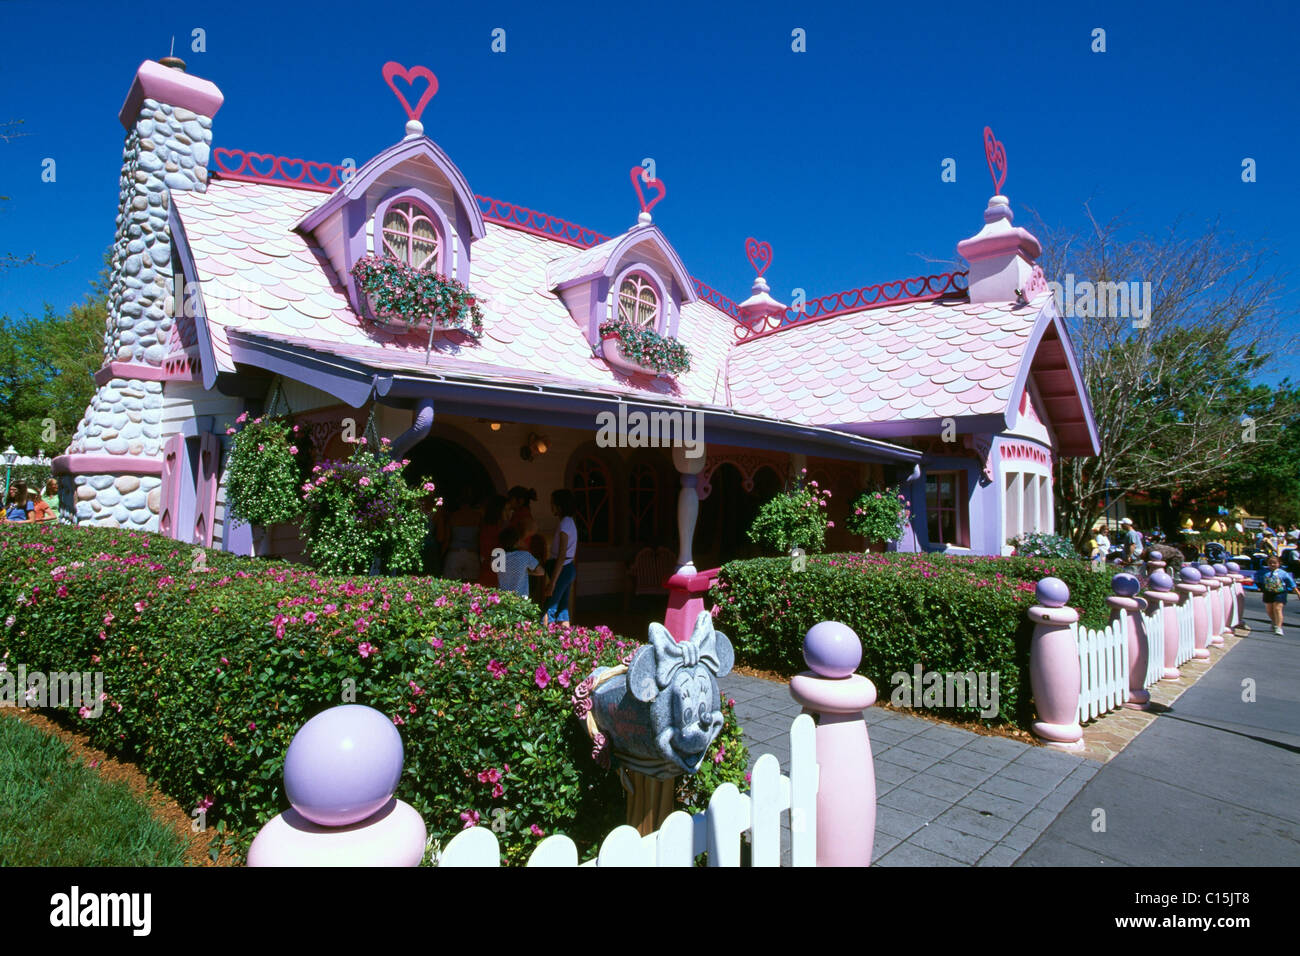 Minnie's house, Disneyworld, Disney World, Orlando, Floride, USA Banque D'Images